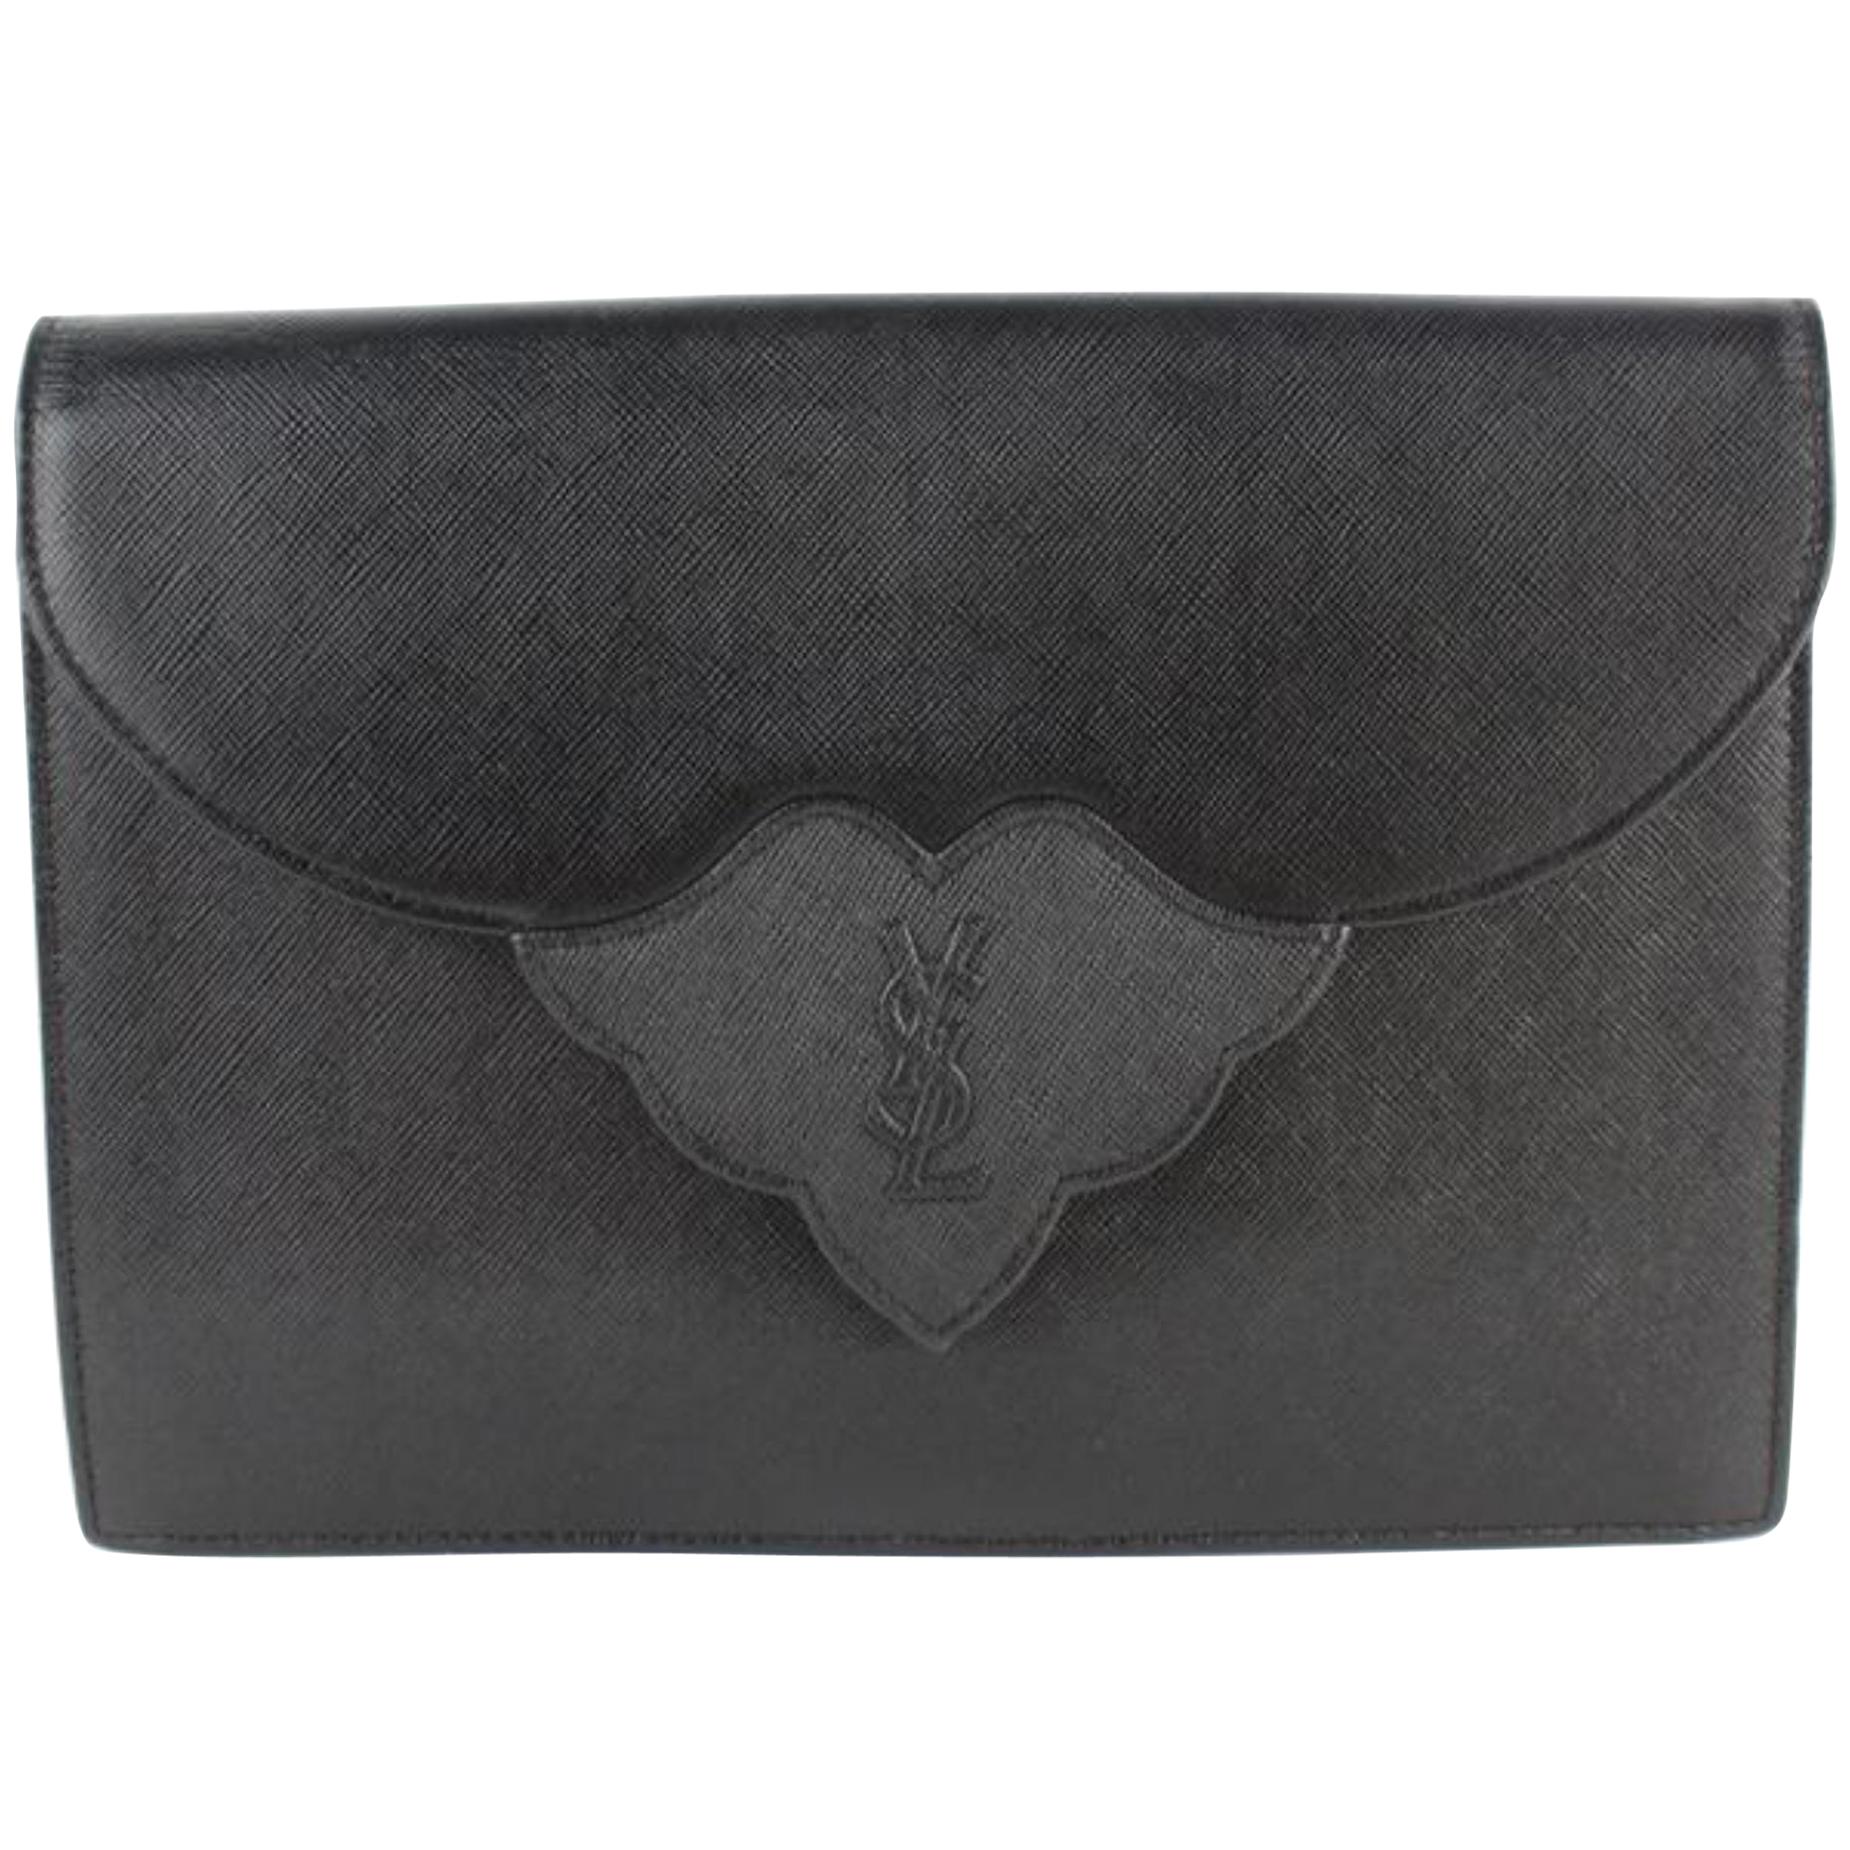 Saint Laurent Monogram Envelope Ysl Flap 14mz1812 Black Leather Clutch For Sale